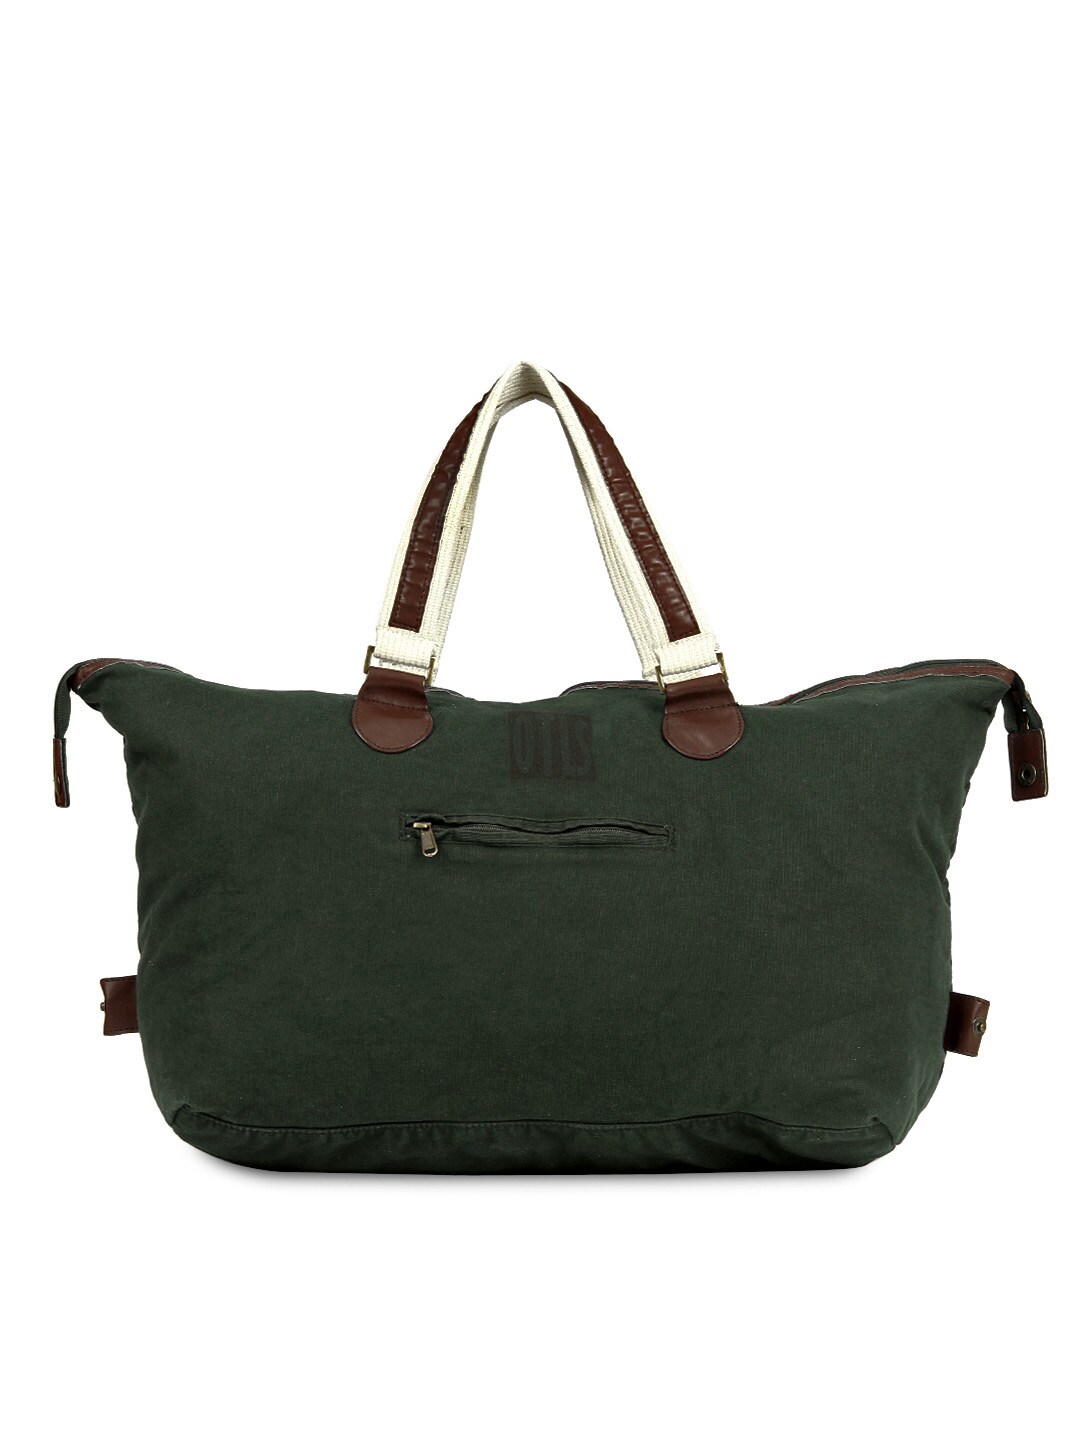 OTLS Green Tote Bag